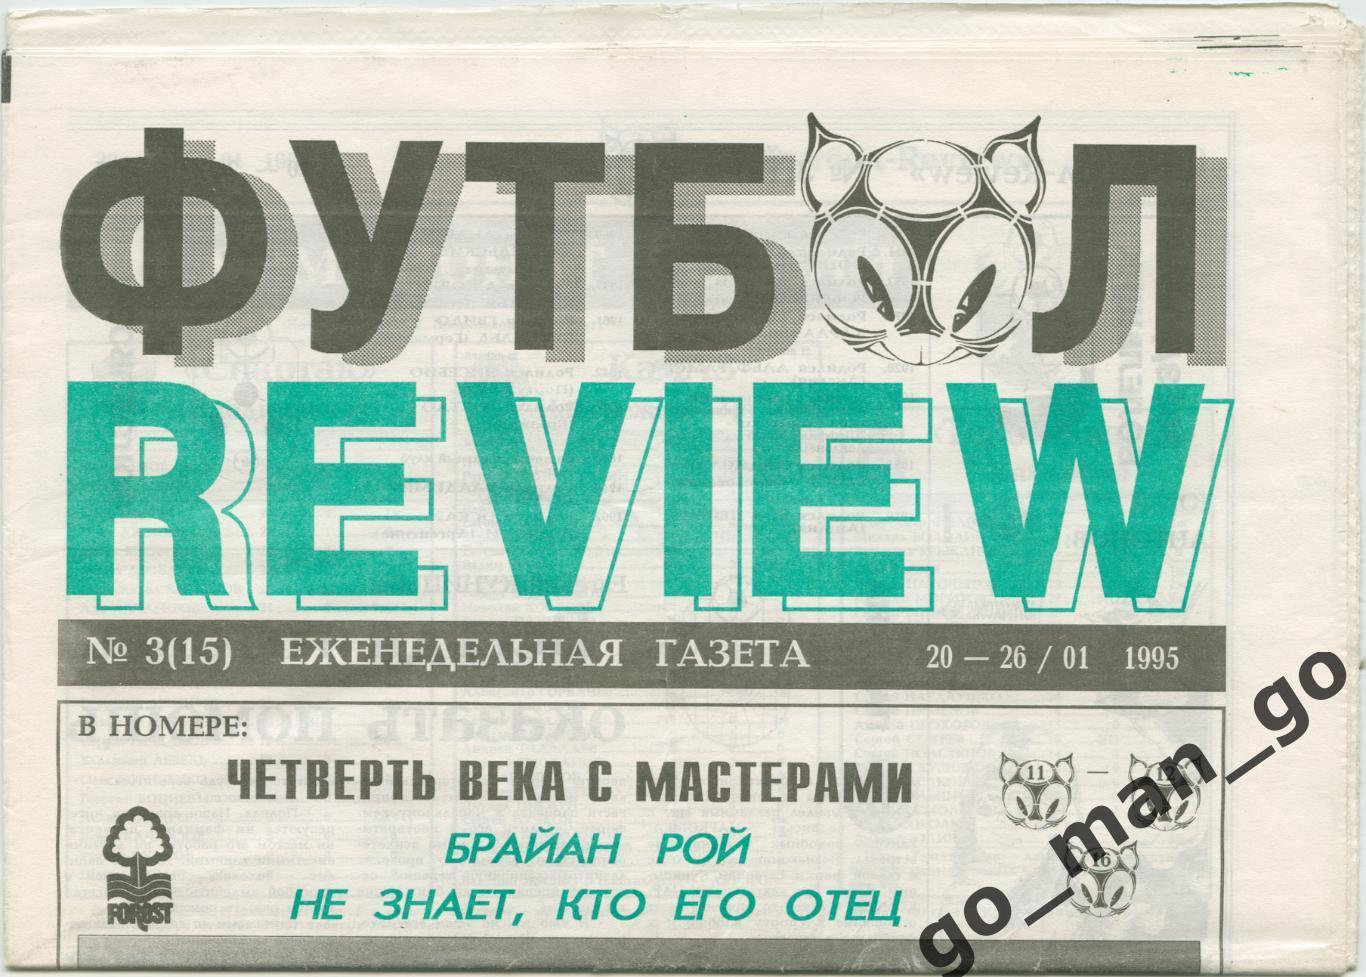 Еженедельник Футбол-Review (Футбол-Ревю), 20-26.01.1995, № 3.